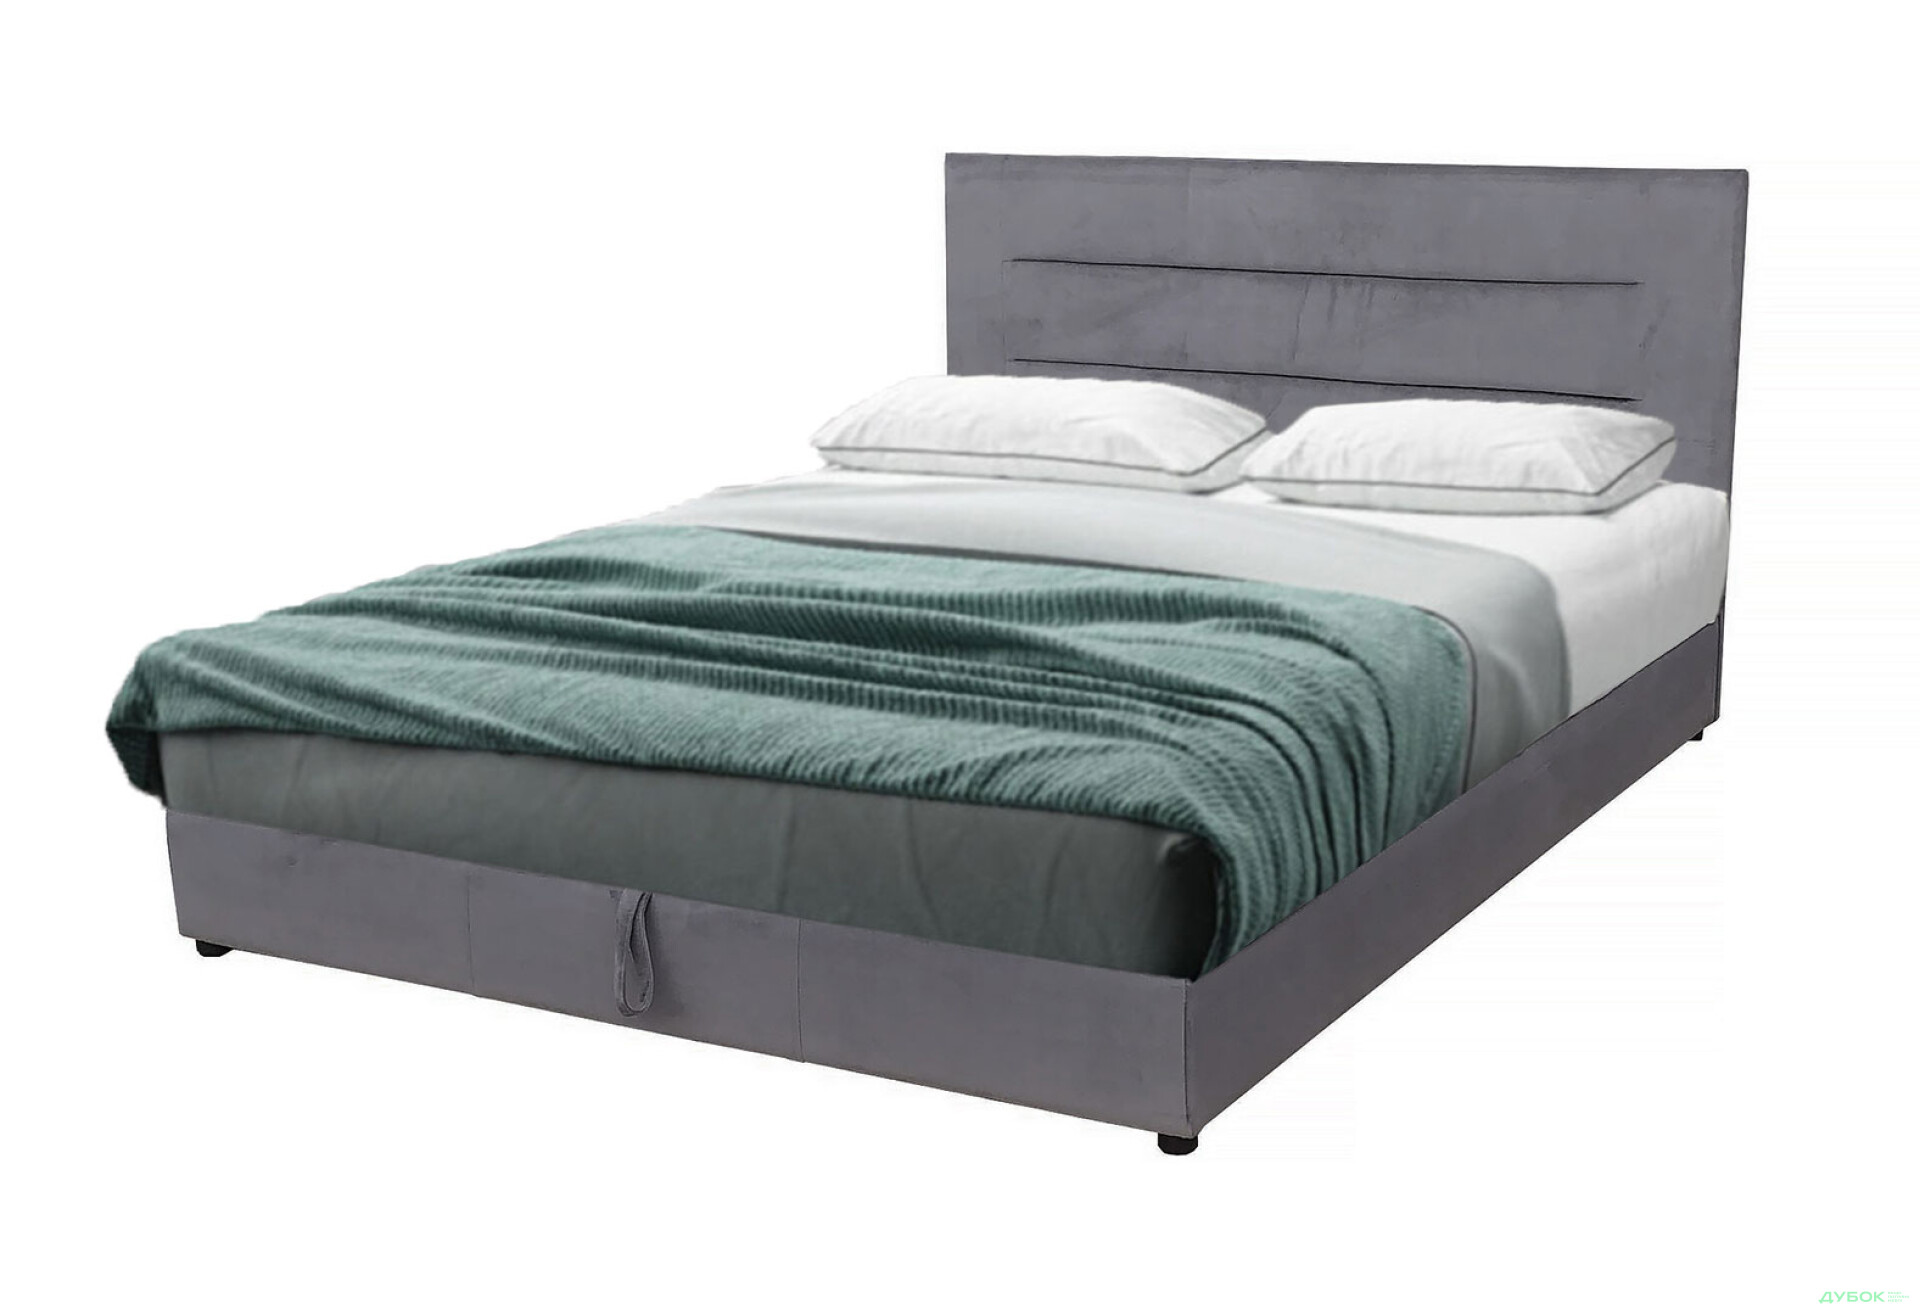 Фото 1 - Ліжко-подіум Vika Горизонт 160х200 см підйомне, матрац жакард, незалежний блок, сірий 